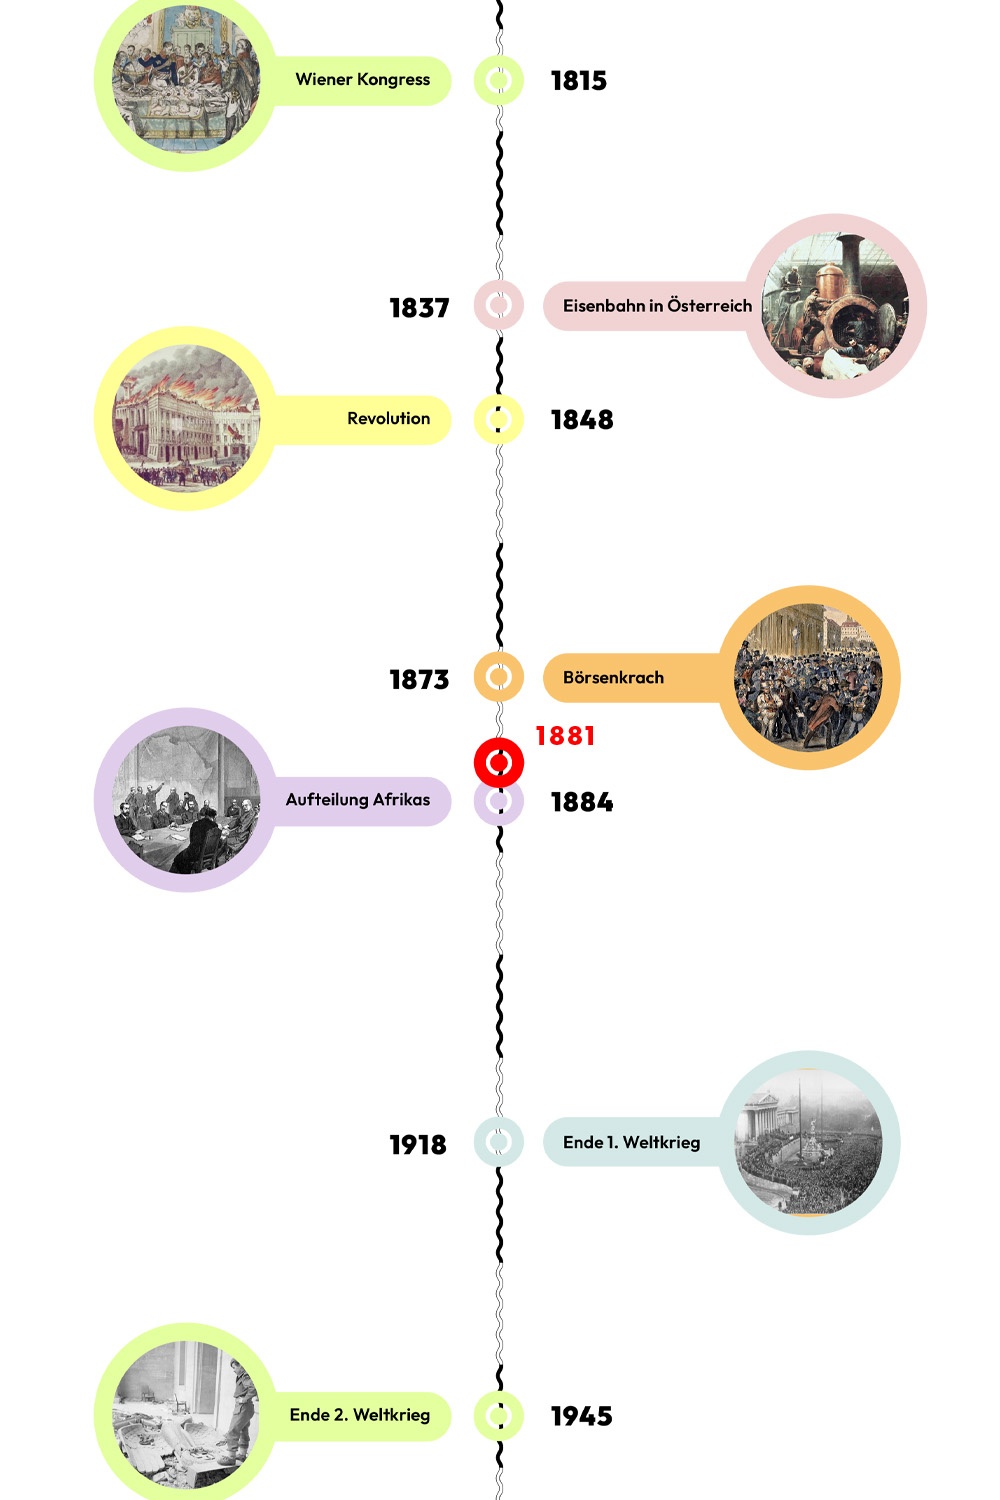 Zeitstrahl mit historischen Ereignissen - 1881 ist hervorgehoben. © wasbishergeschah.at